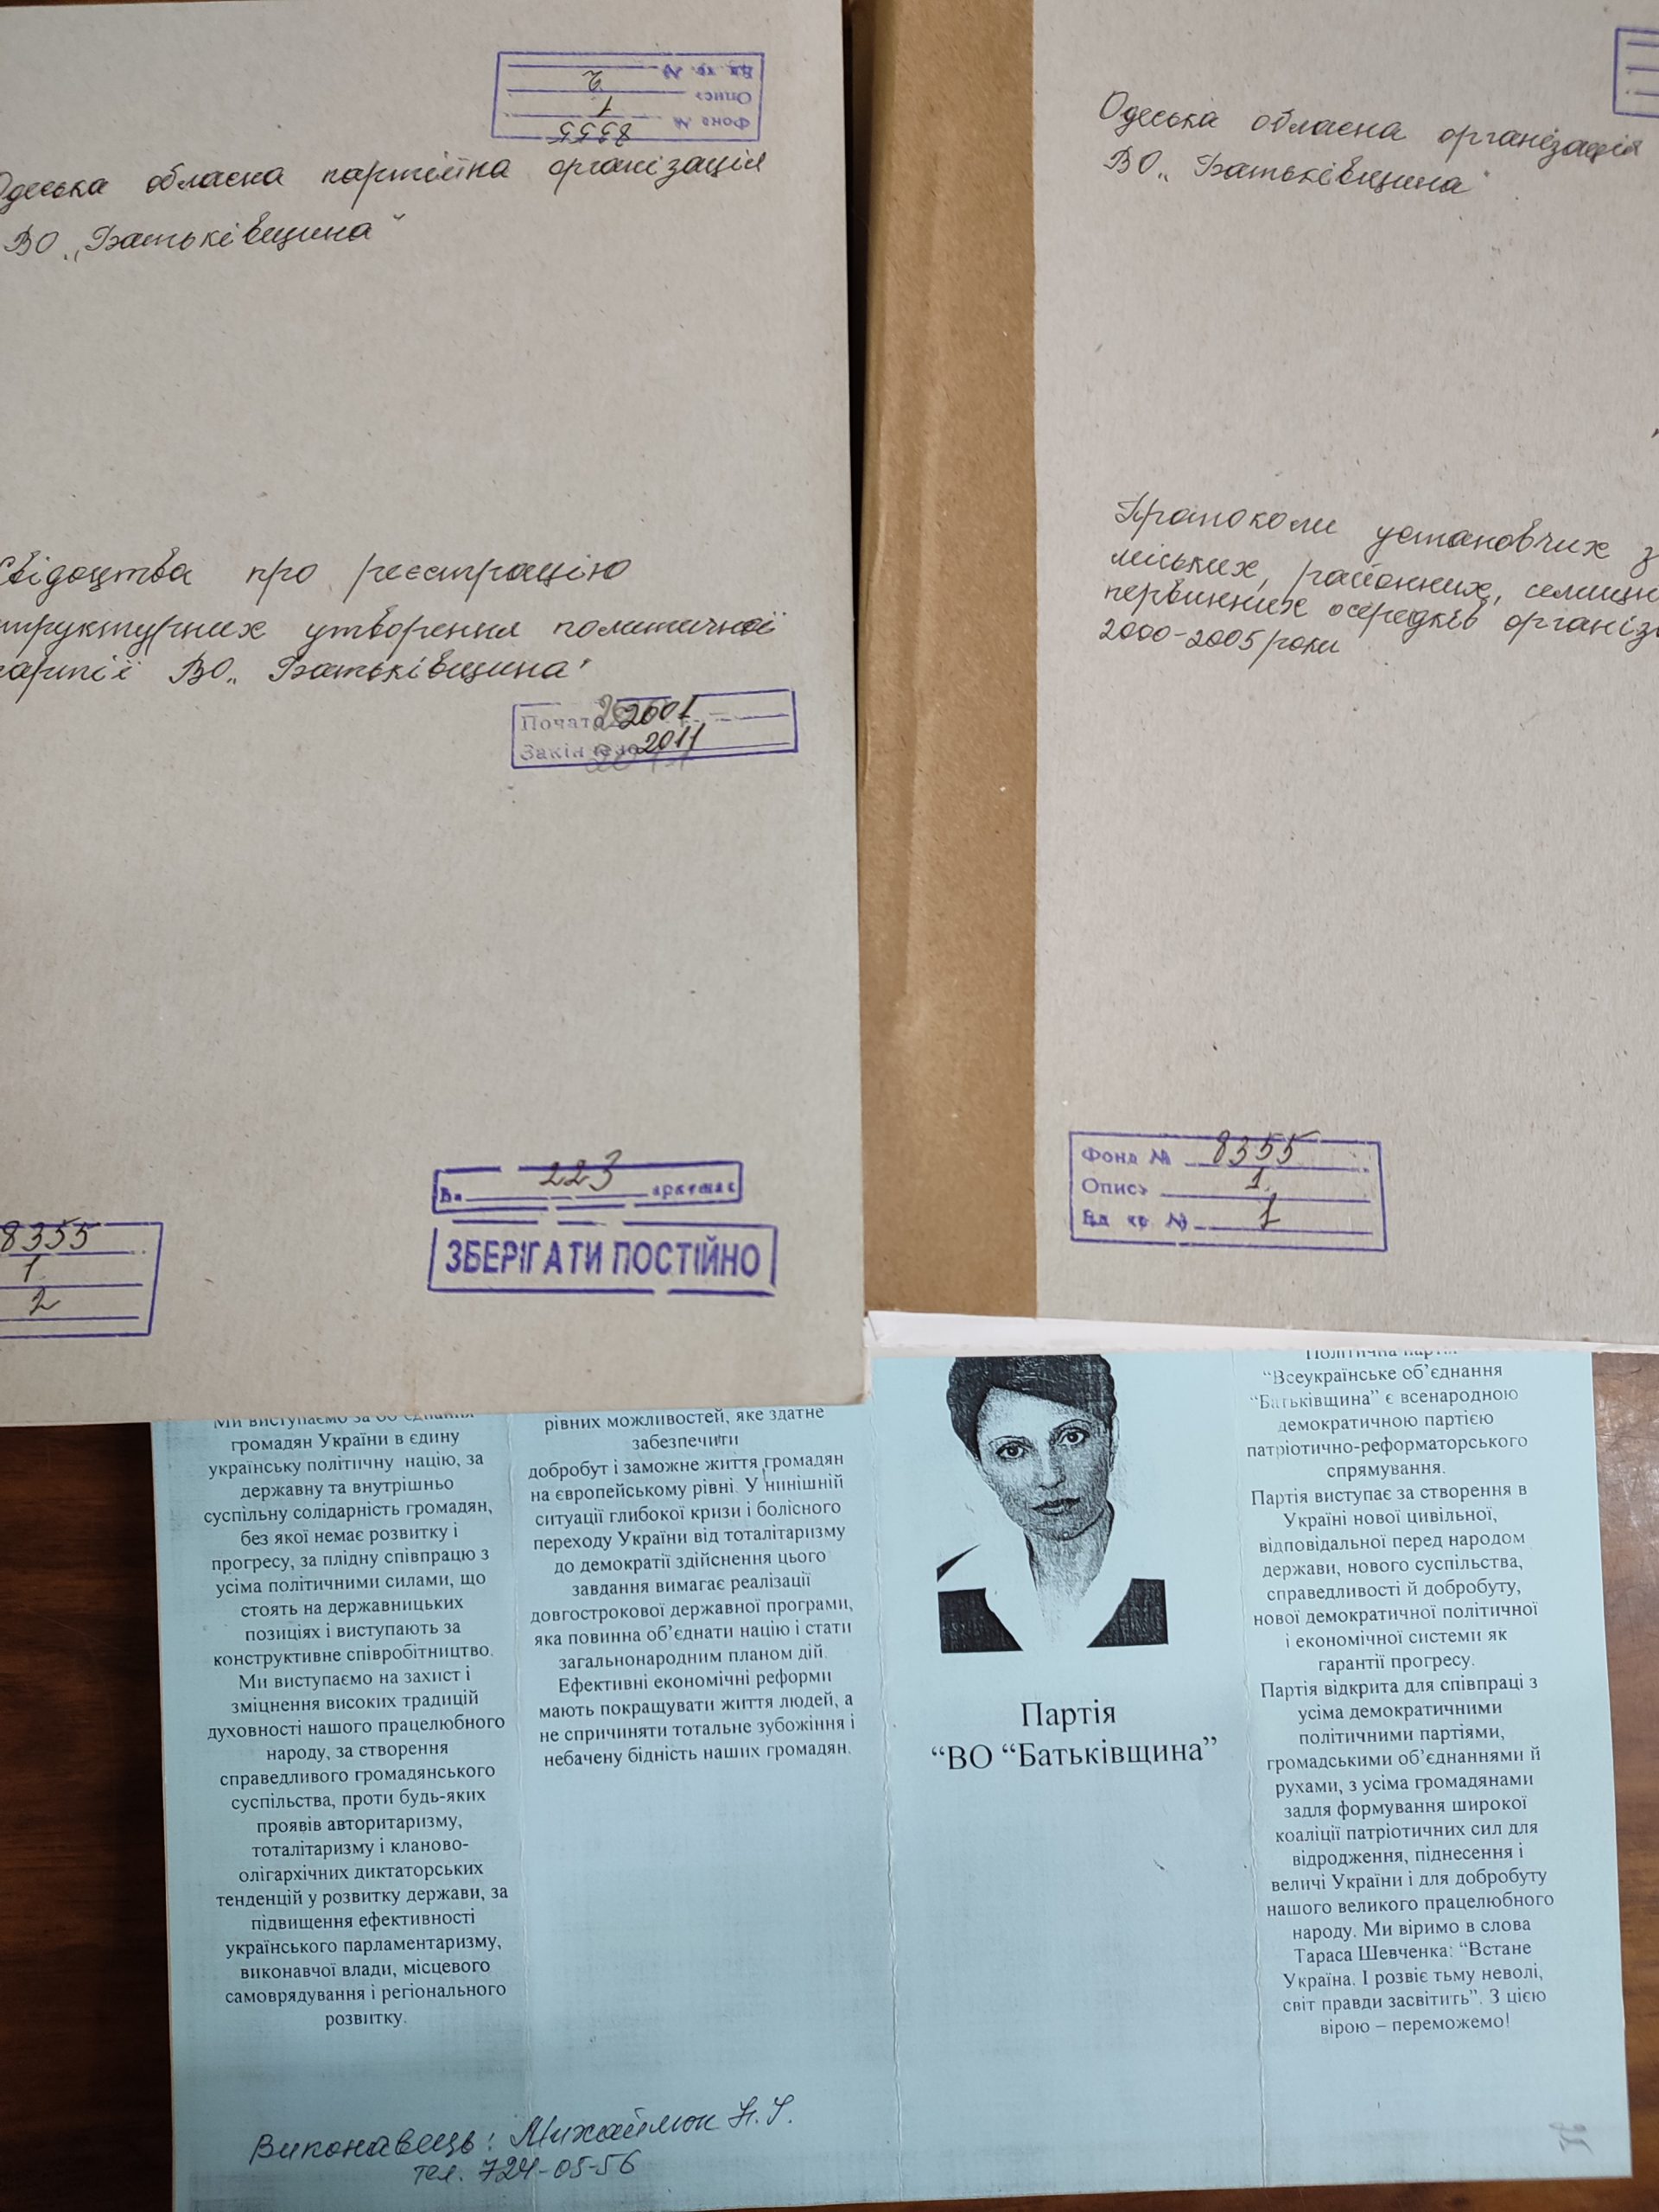 Нові надходження до Держархіву документів від Одеської обласної партійної організації ВО «Батьківщина»